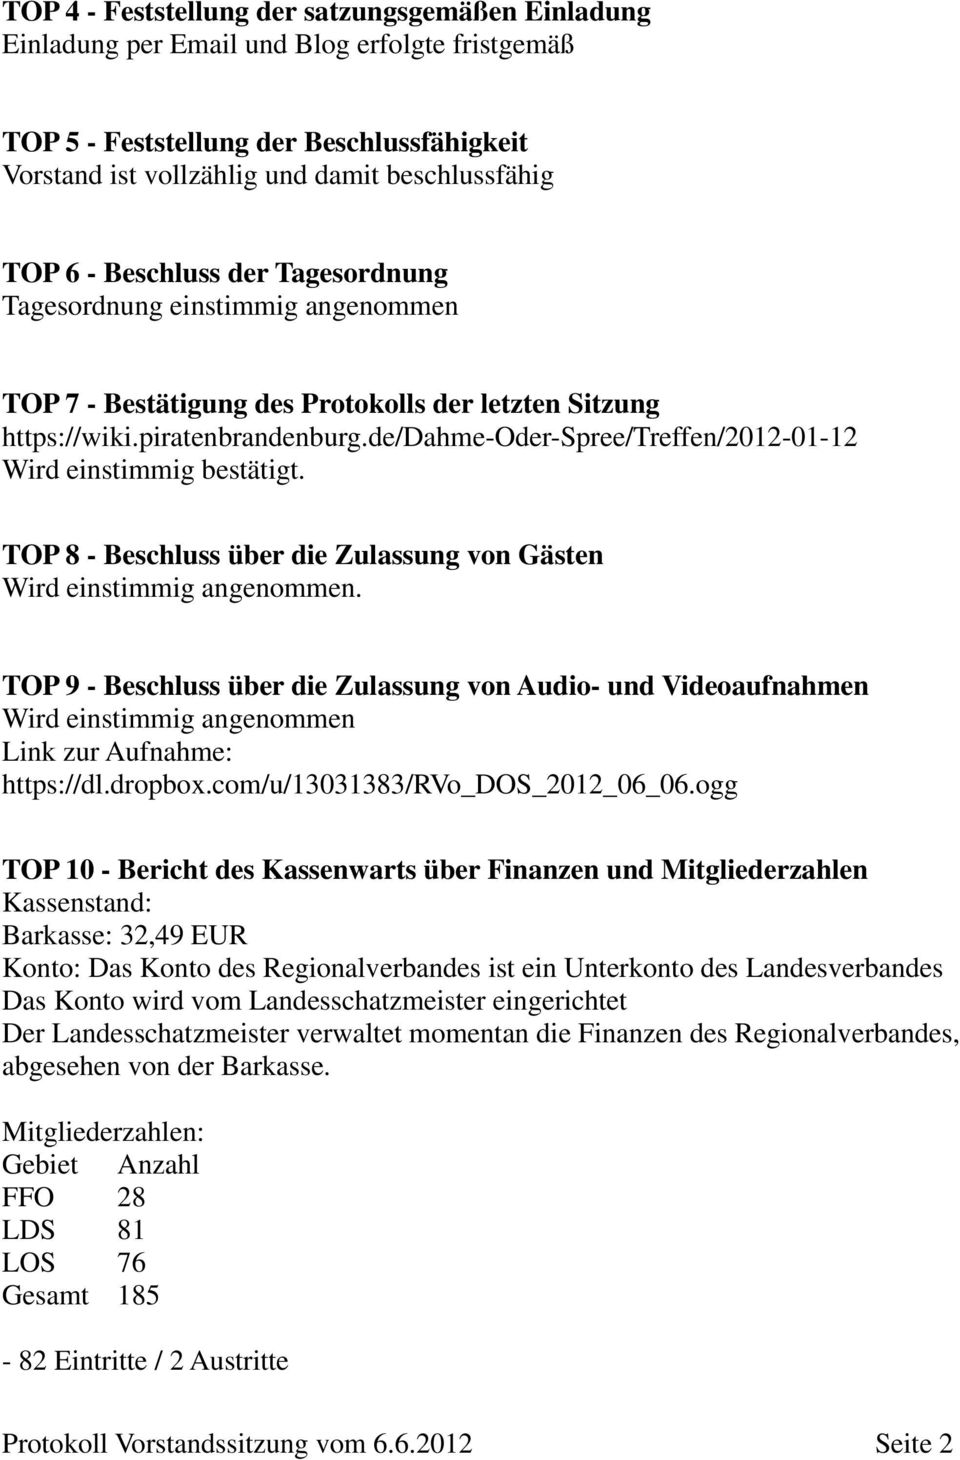 de/dahme-oder-spree/treffen/2012-01-12 Wird einstimmig bestätigt. TOP 8 - Beschluss über die Zulassung von Gästen Wird einstimmig angenommen.